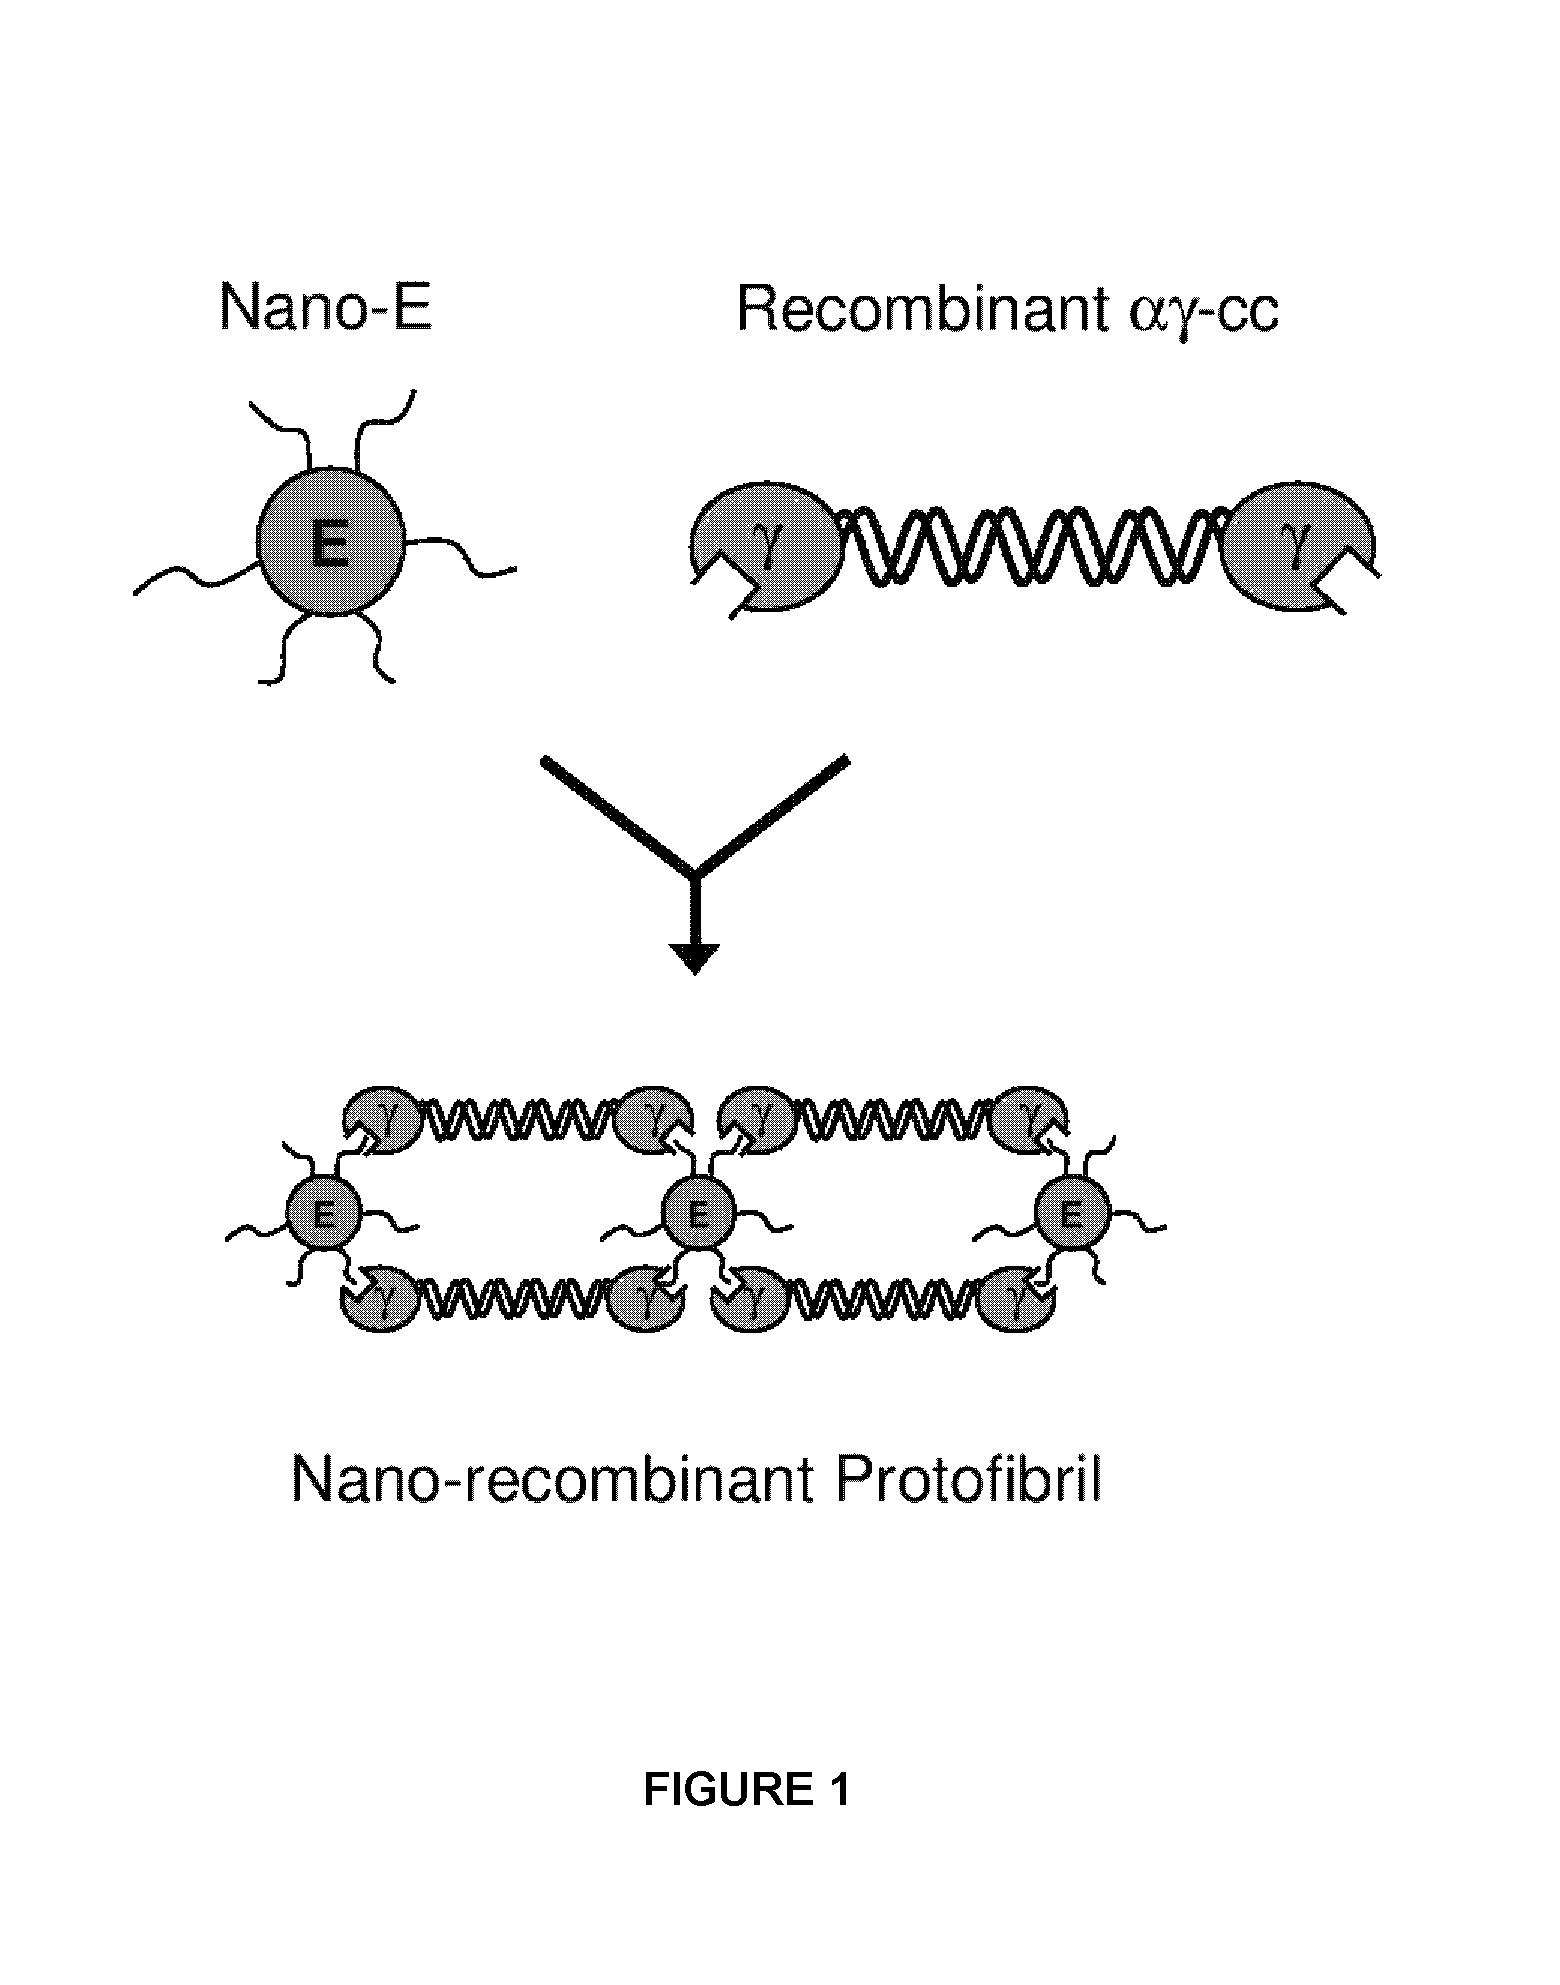 Nano-recombinant fibrinogen for fibrin sealants